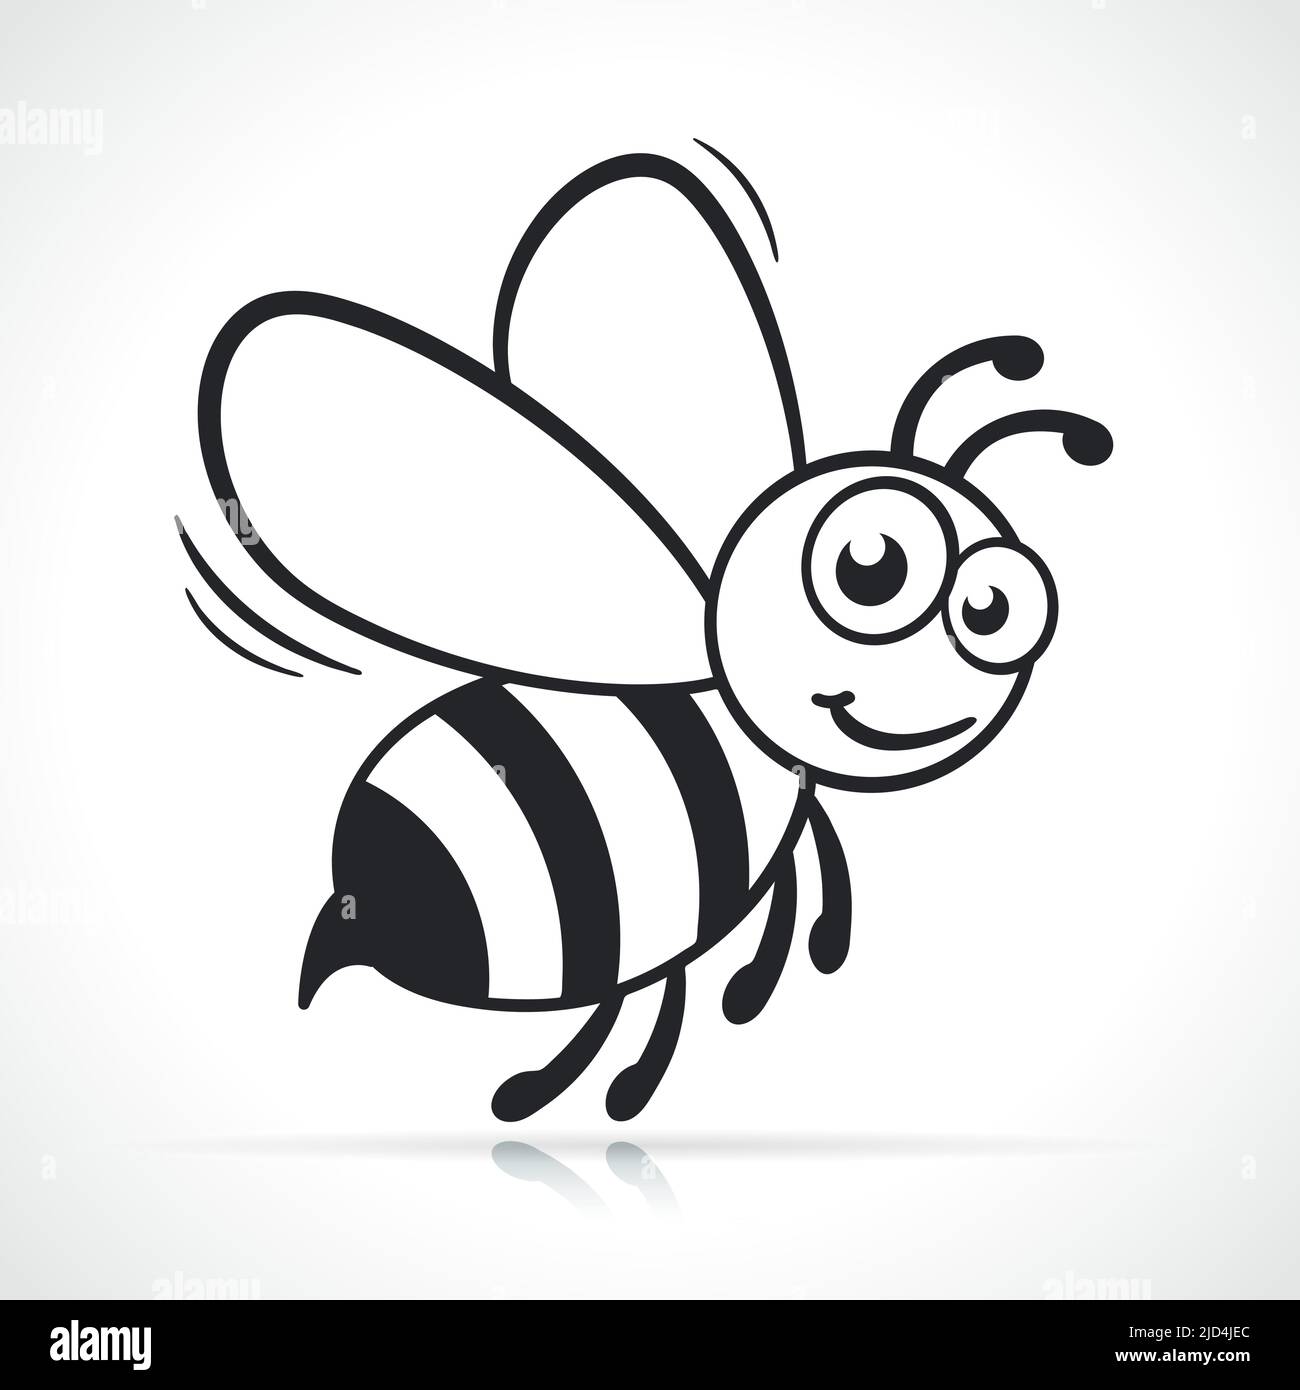 diseño de dibujo en blanco y negro de abeja de miel Ilustración del Vector